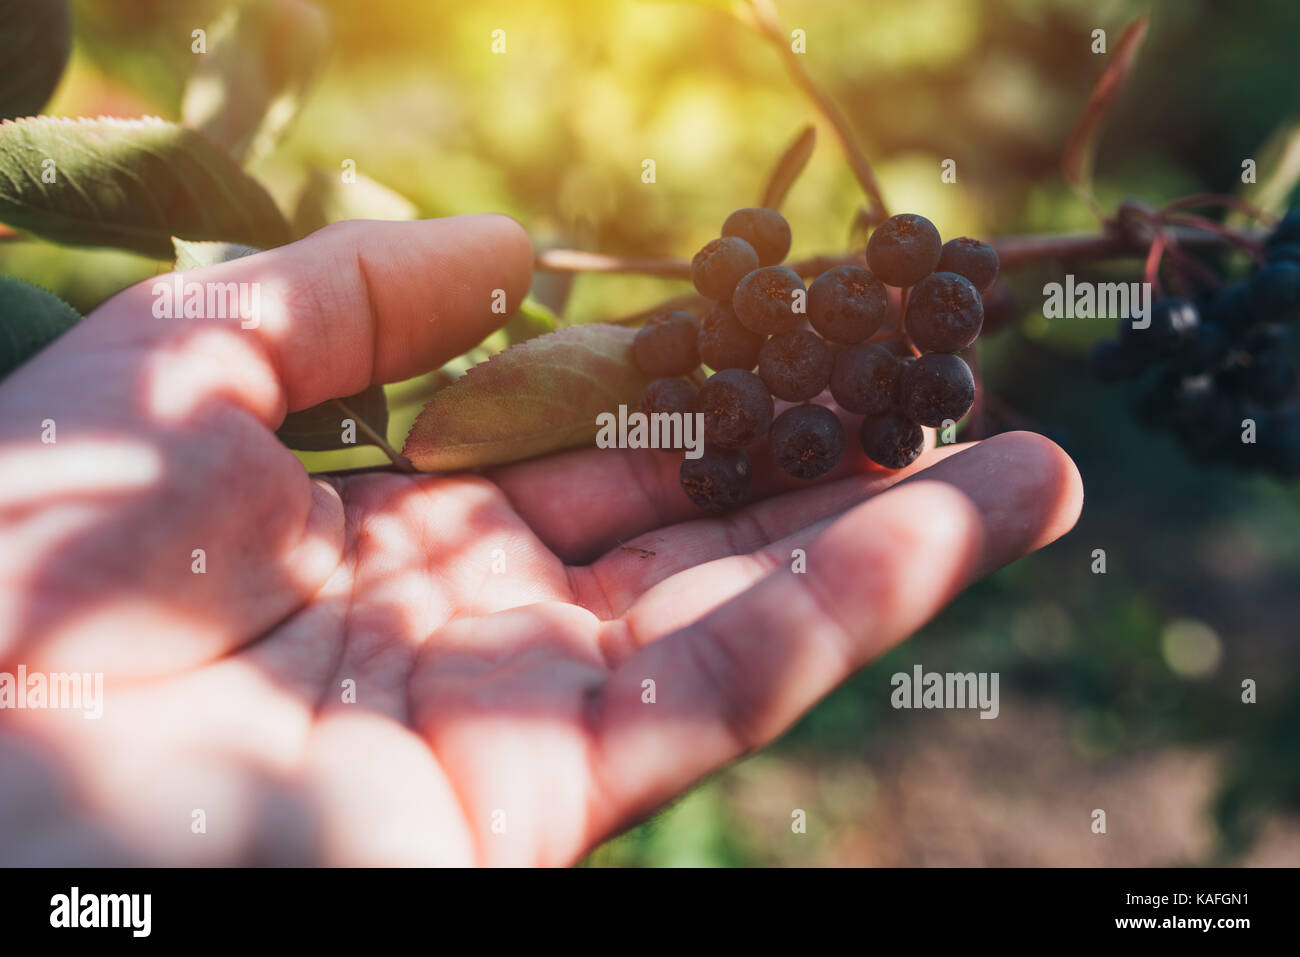 L'examen de l'agriculteur aronia petits fruits cultivés au jardin bio, homme hand holding mûrissement des fruits Banque D'Images